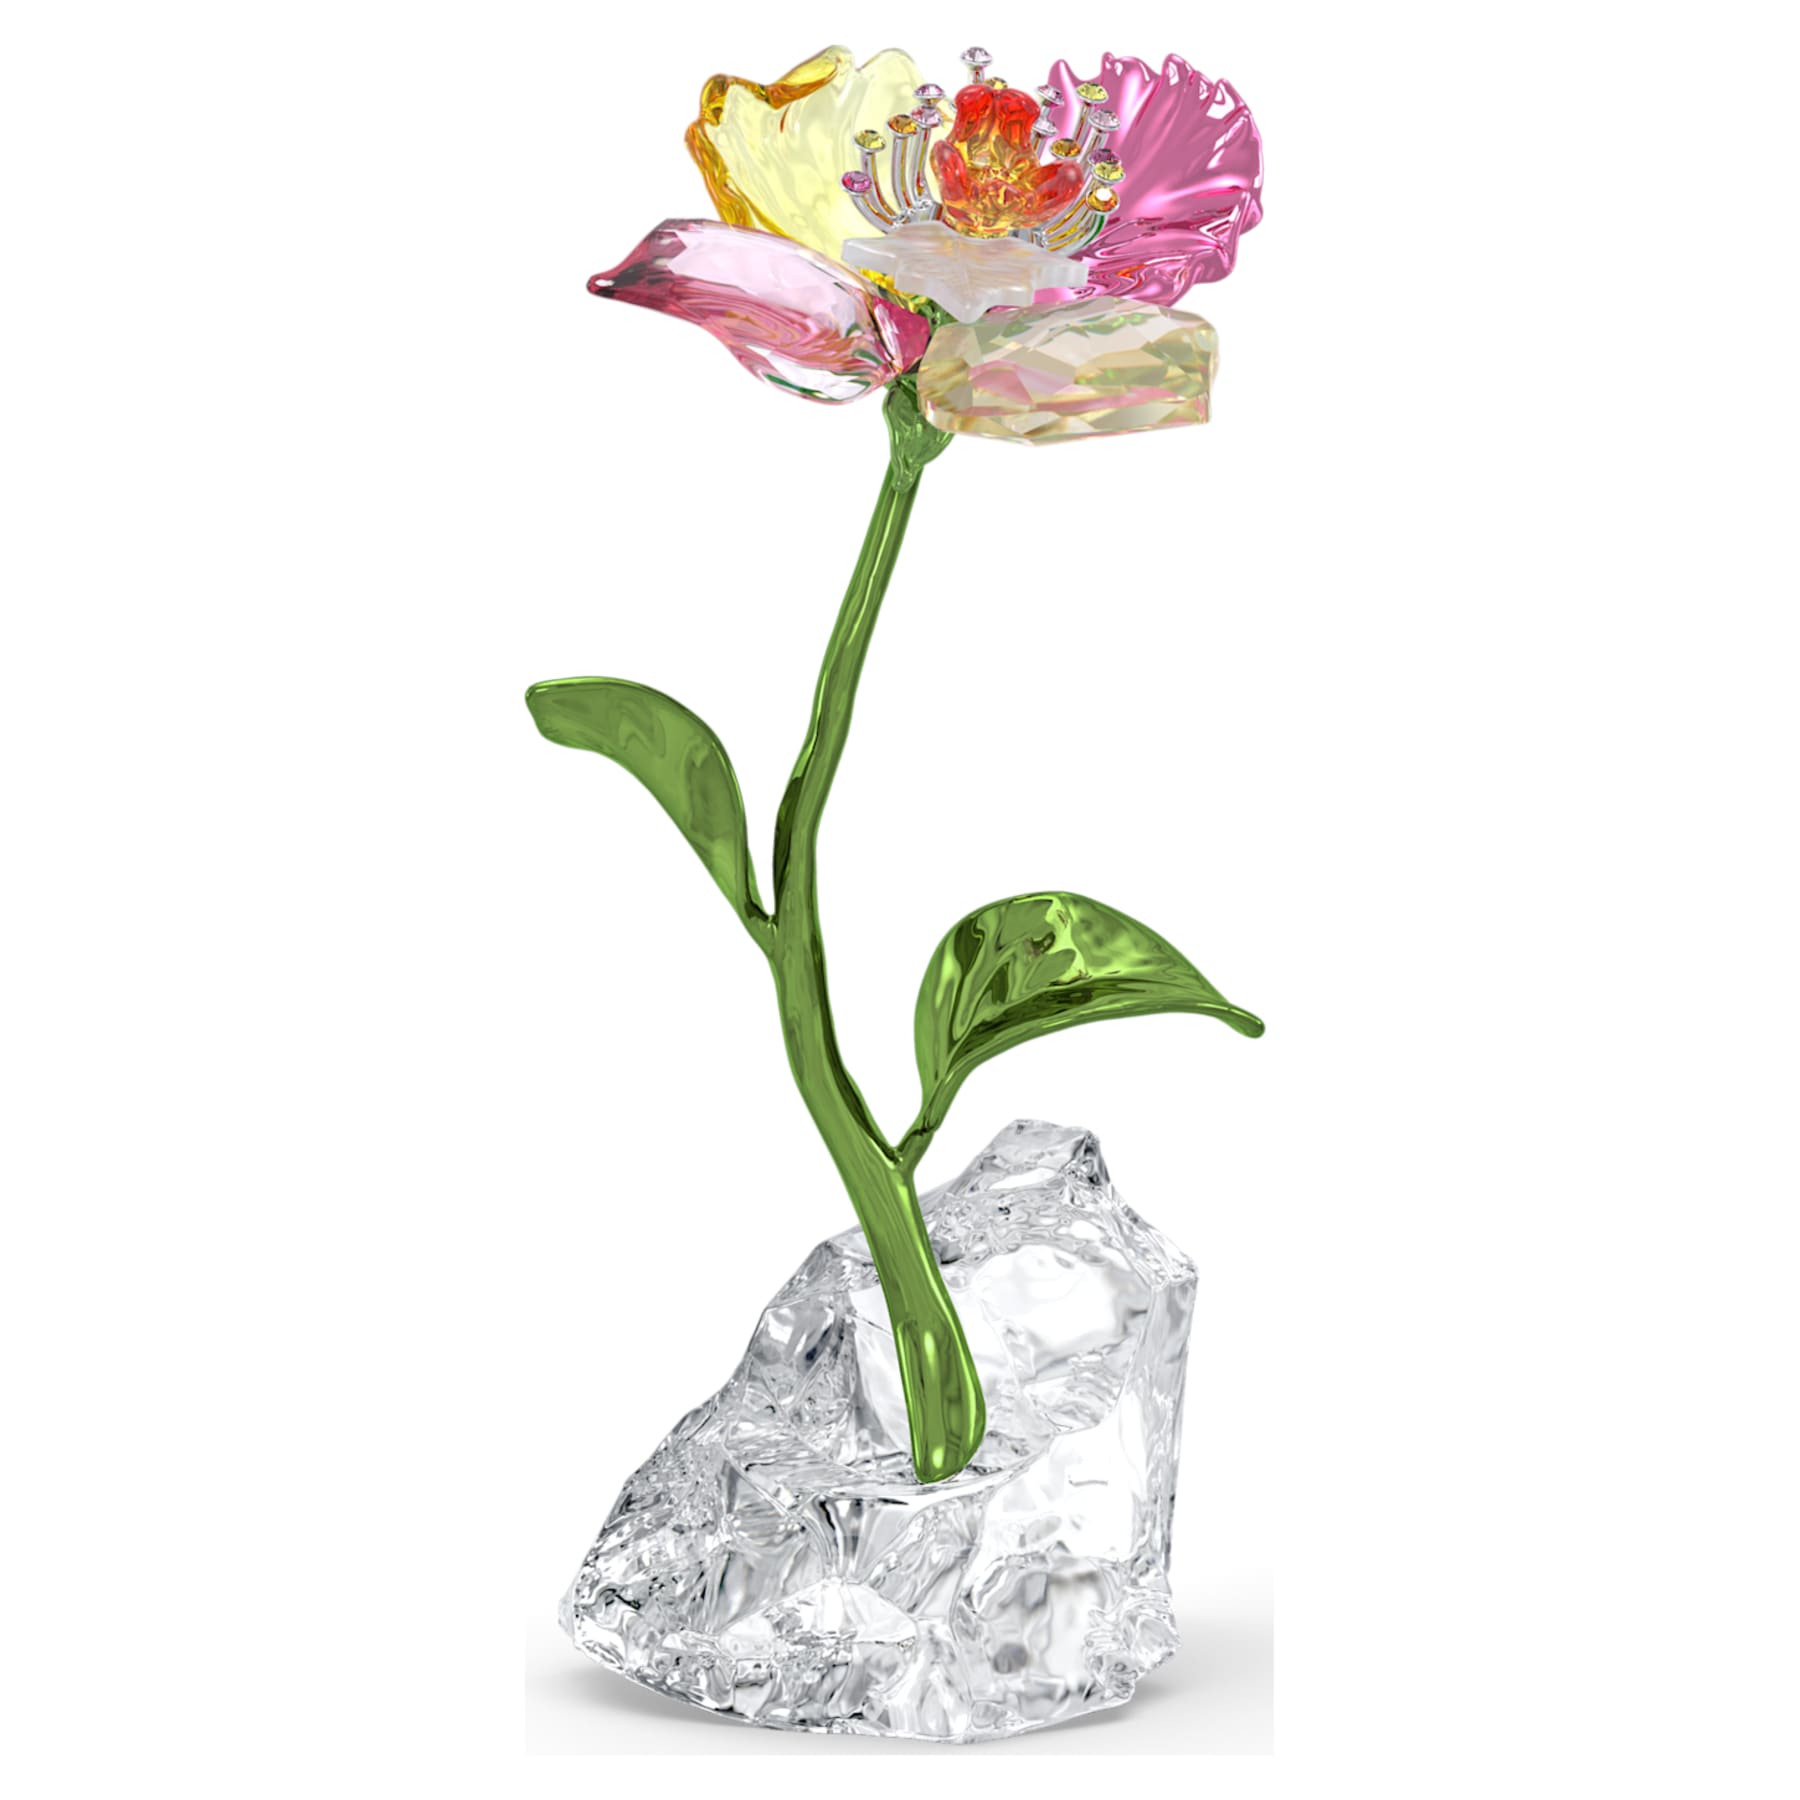 Idyllia - Flower - Figurine - Swarovski